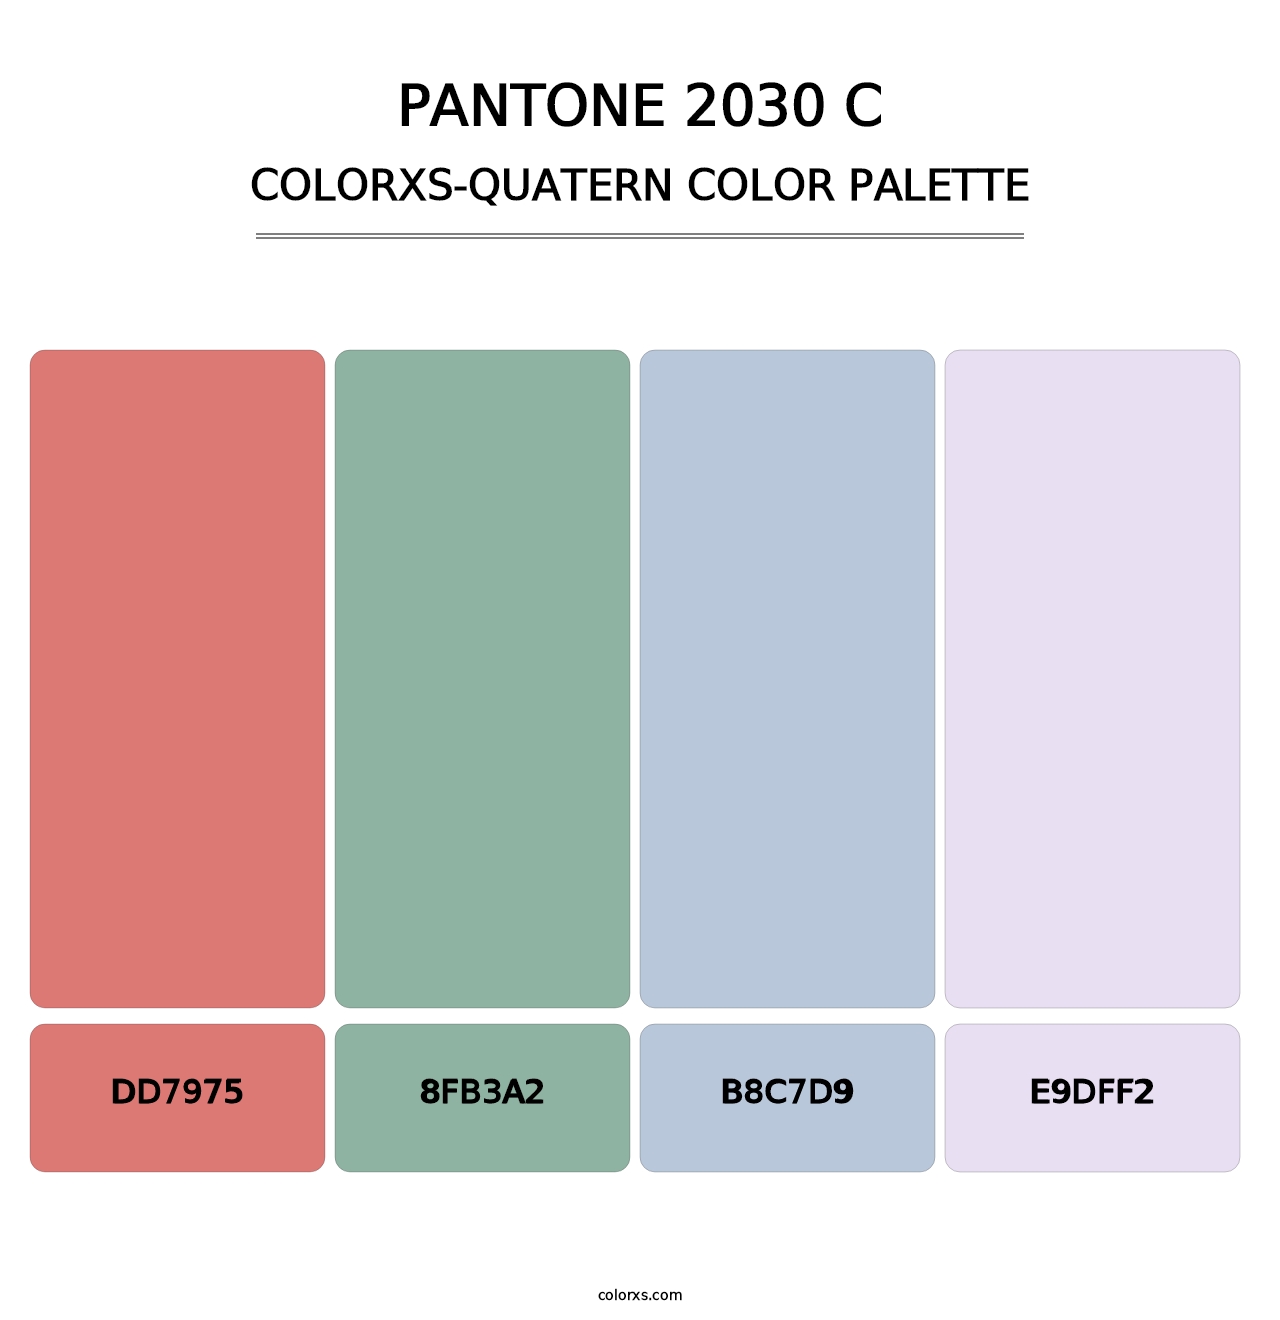 PANTONE 2030 C - Colorxs Quatern Palette